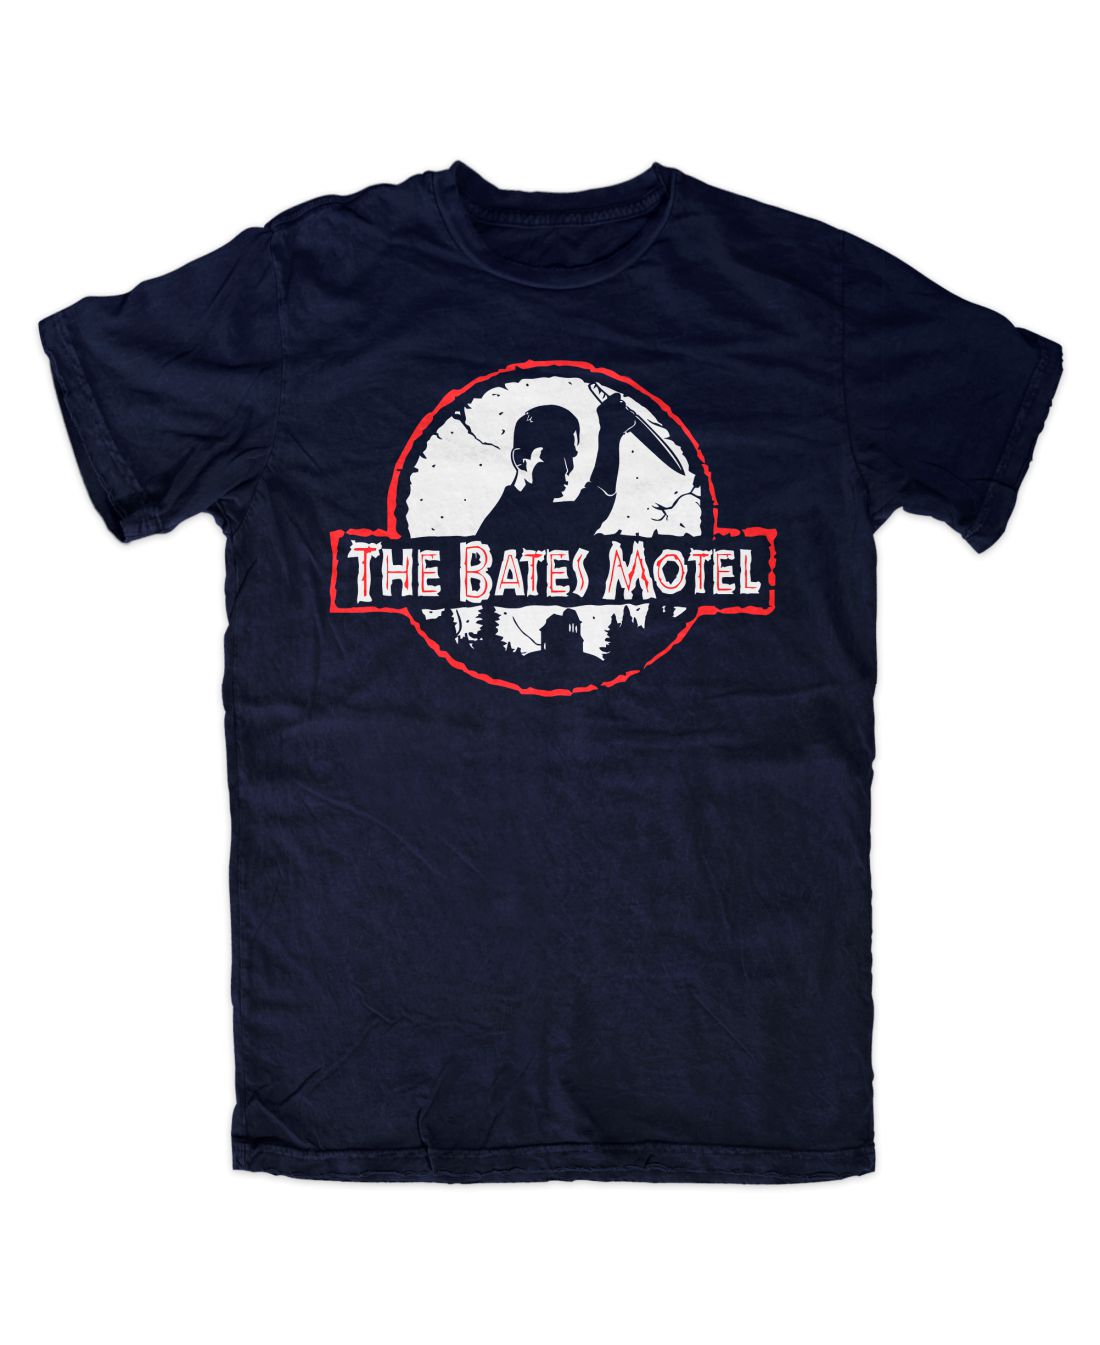 The Bates Motel (navy blue póló)